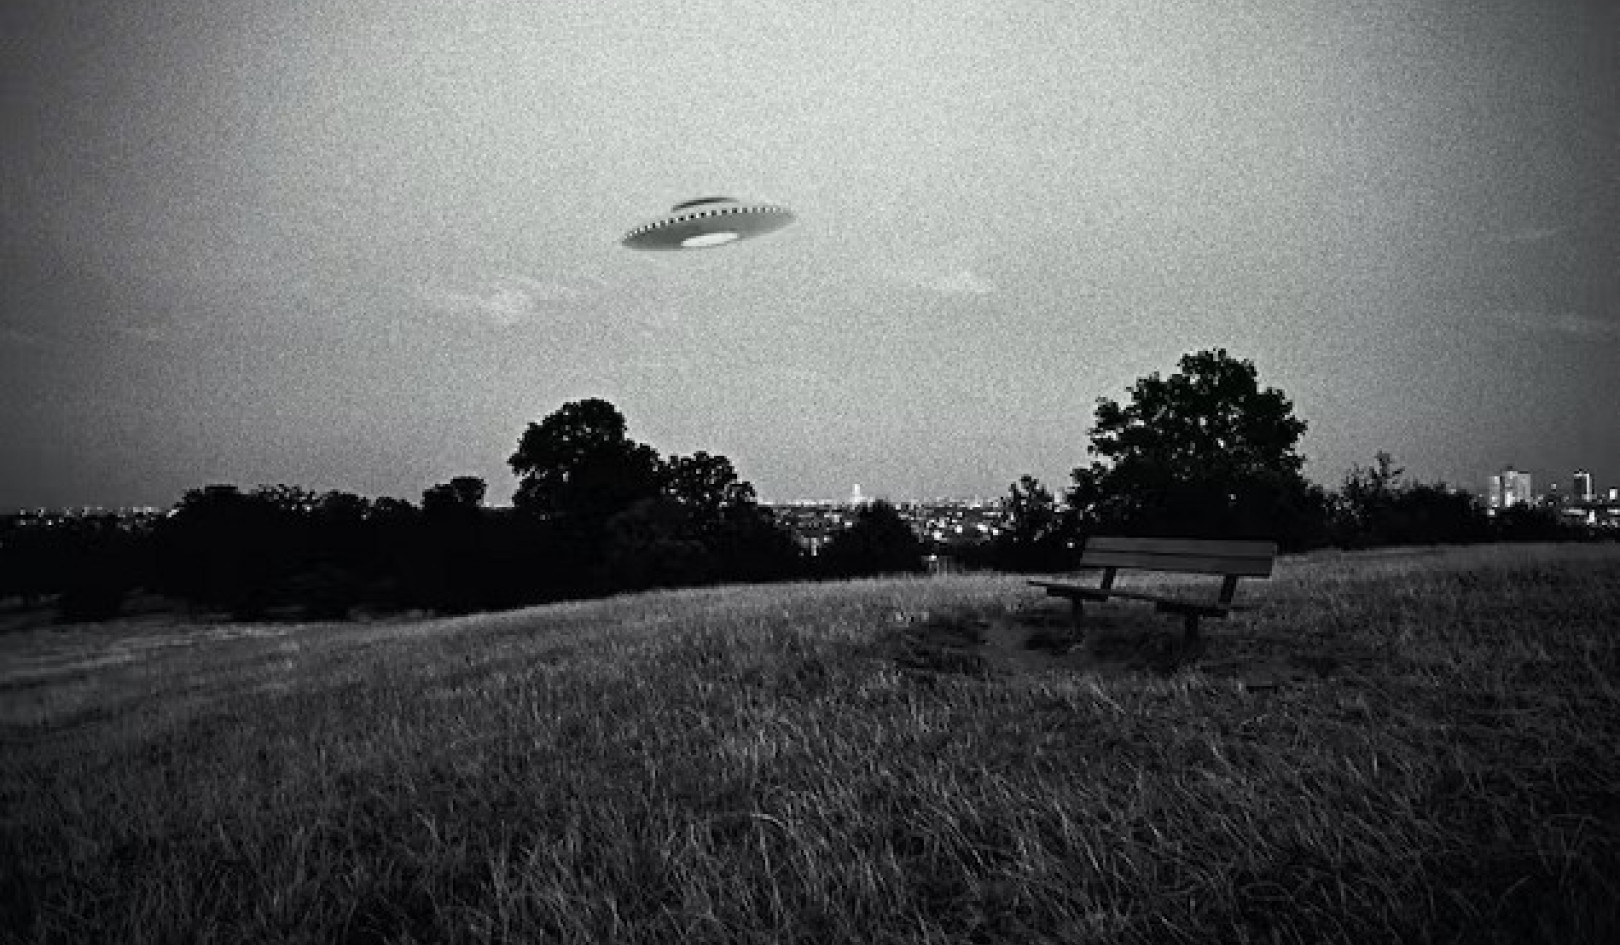 İnsanlar Neden UFO'ların Dünya Dışı Olduğuna İnanma Eğiliminde?